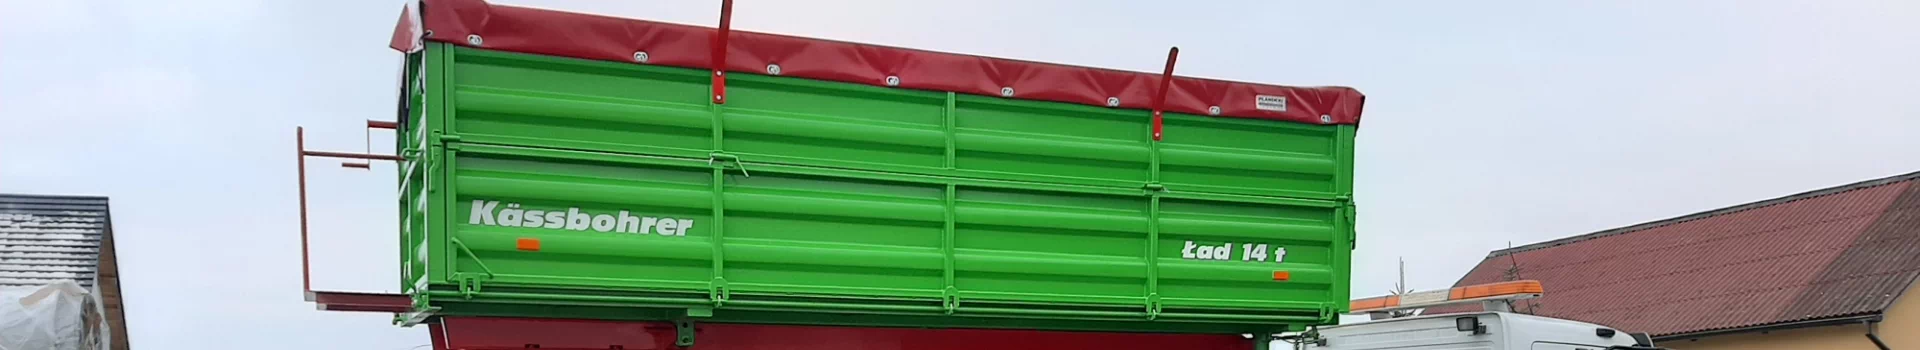 zielona przyczepa z czerwonymi elementami